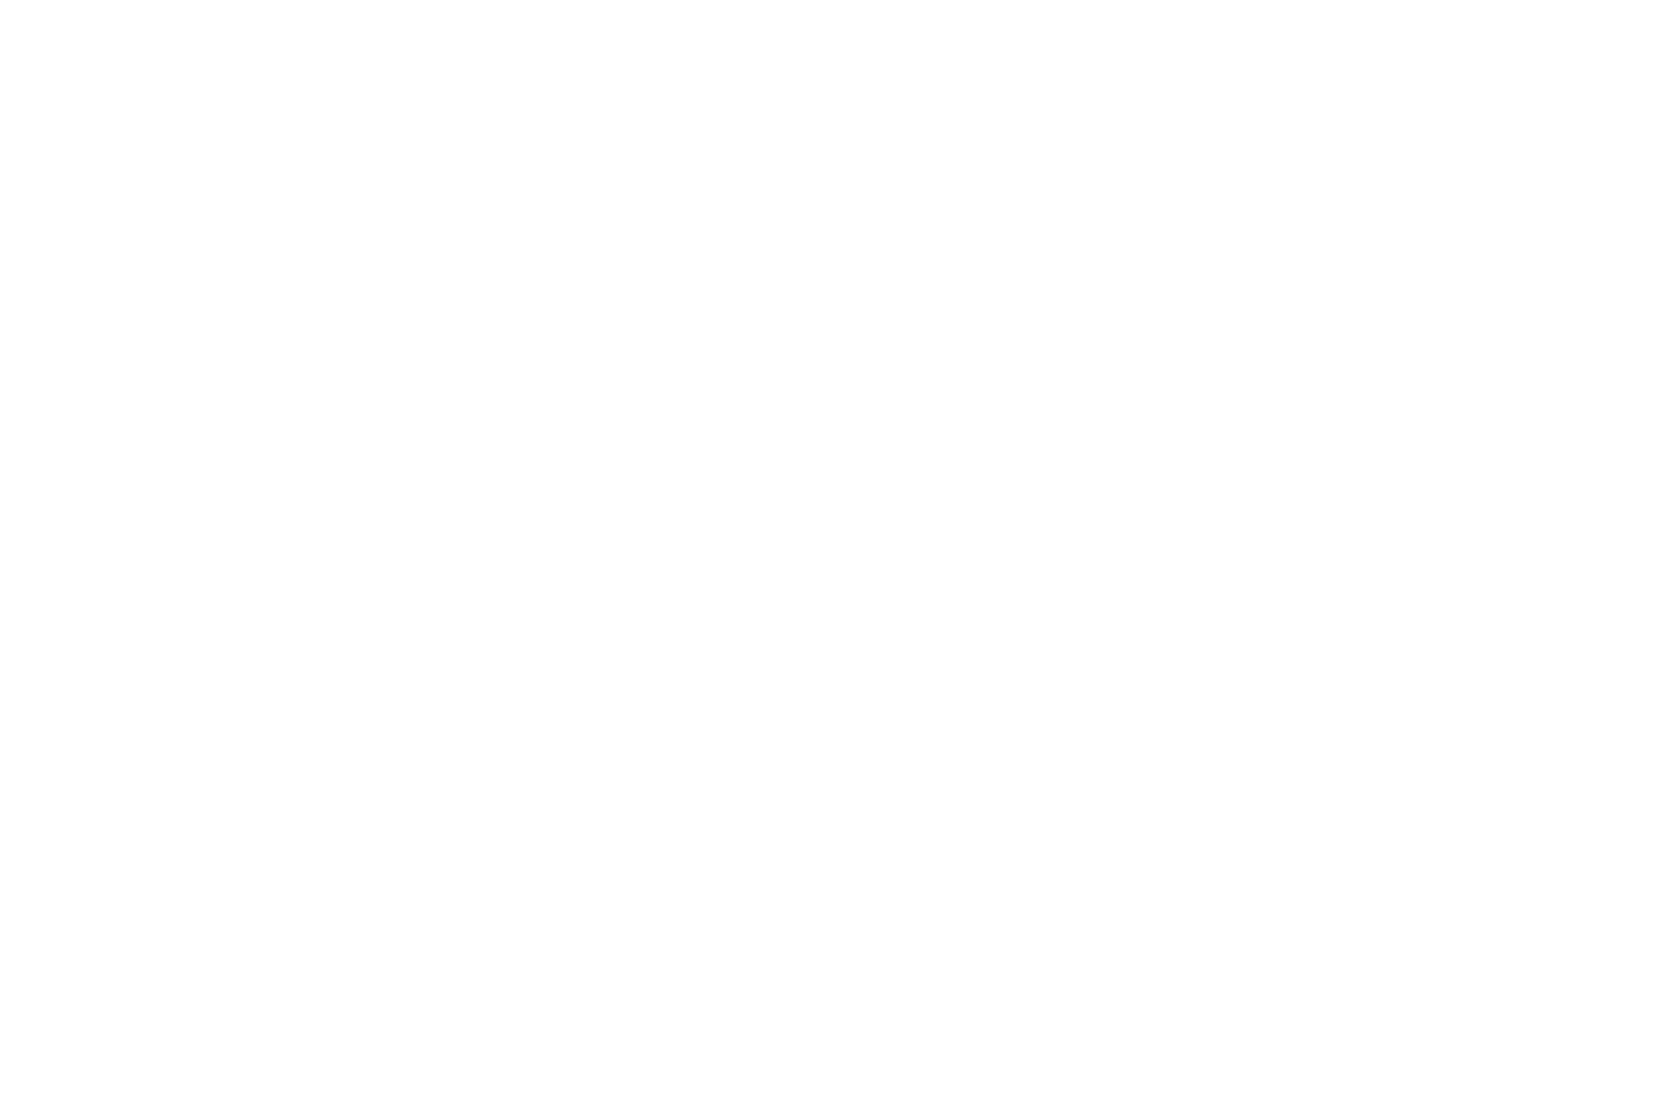 оклейка AUDI A4 фактурной виниловой пленкой в студии оклейки Николая Ильина